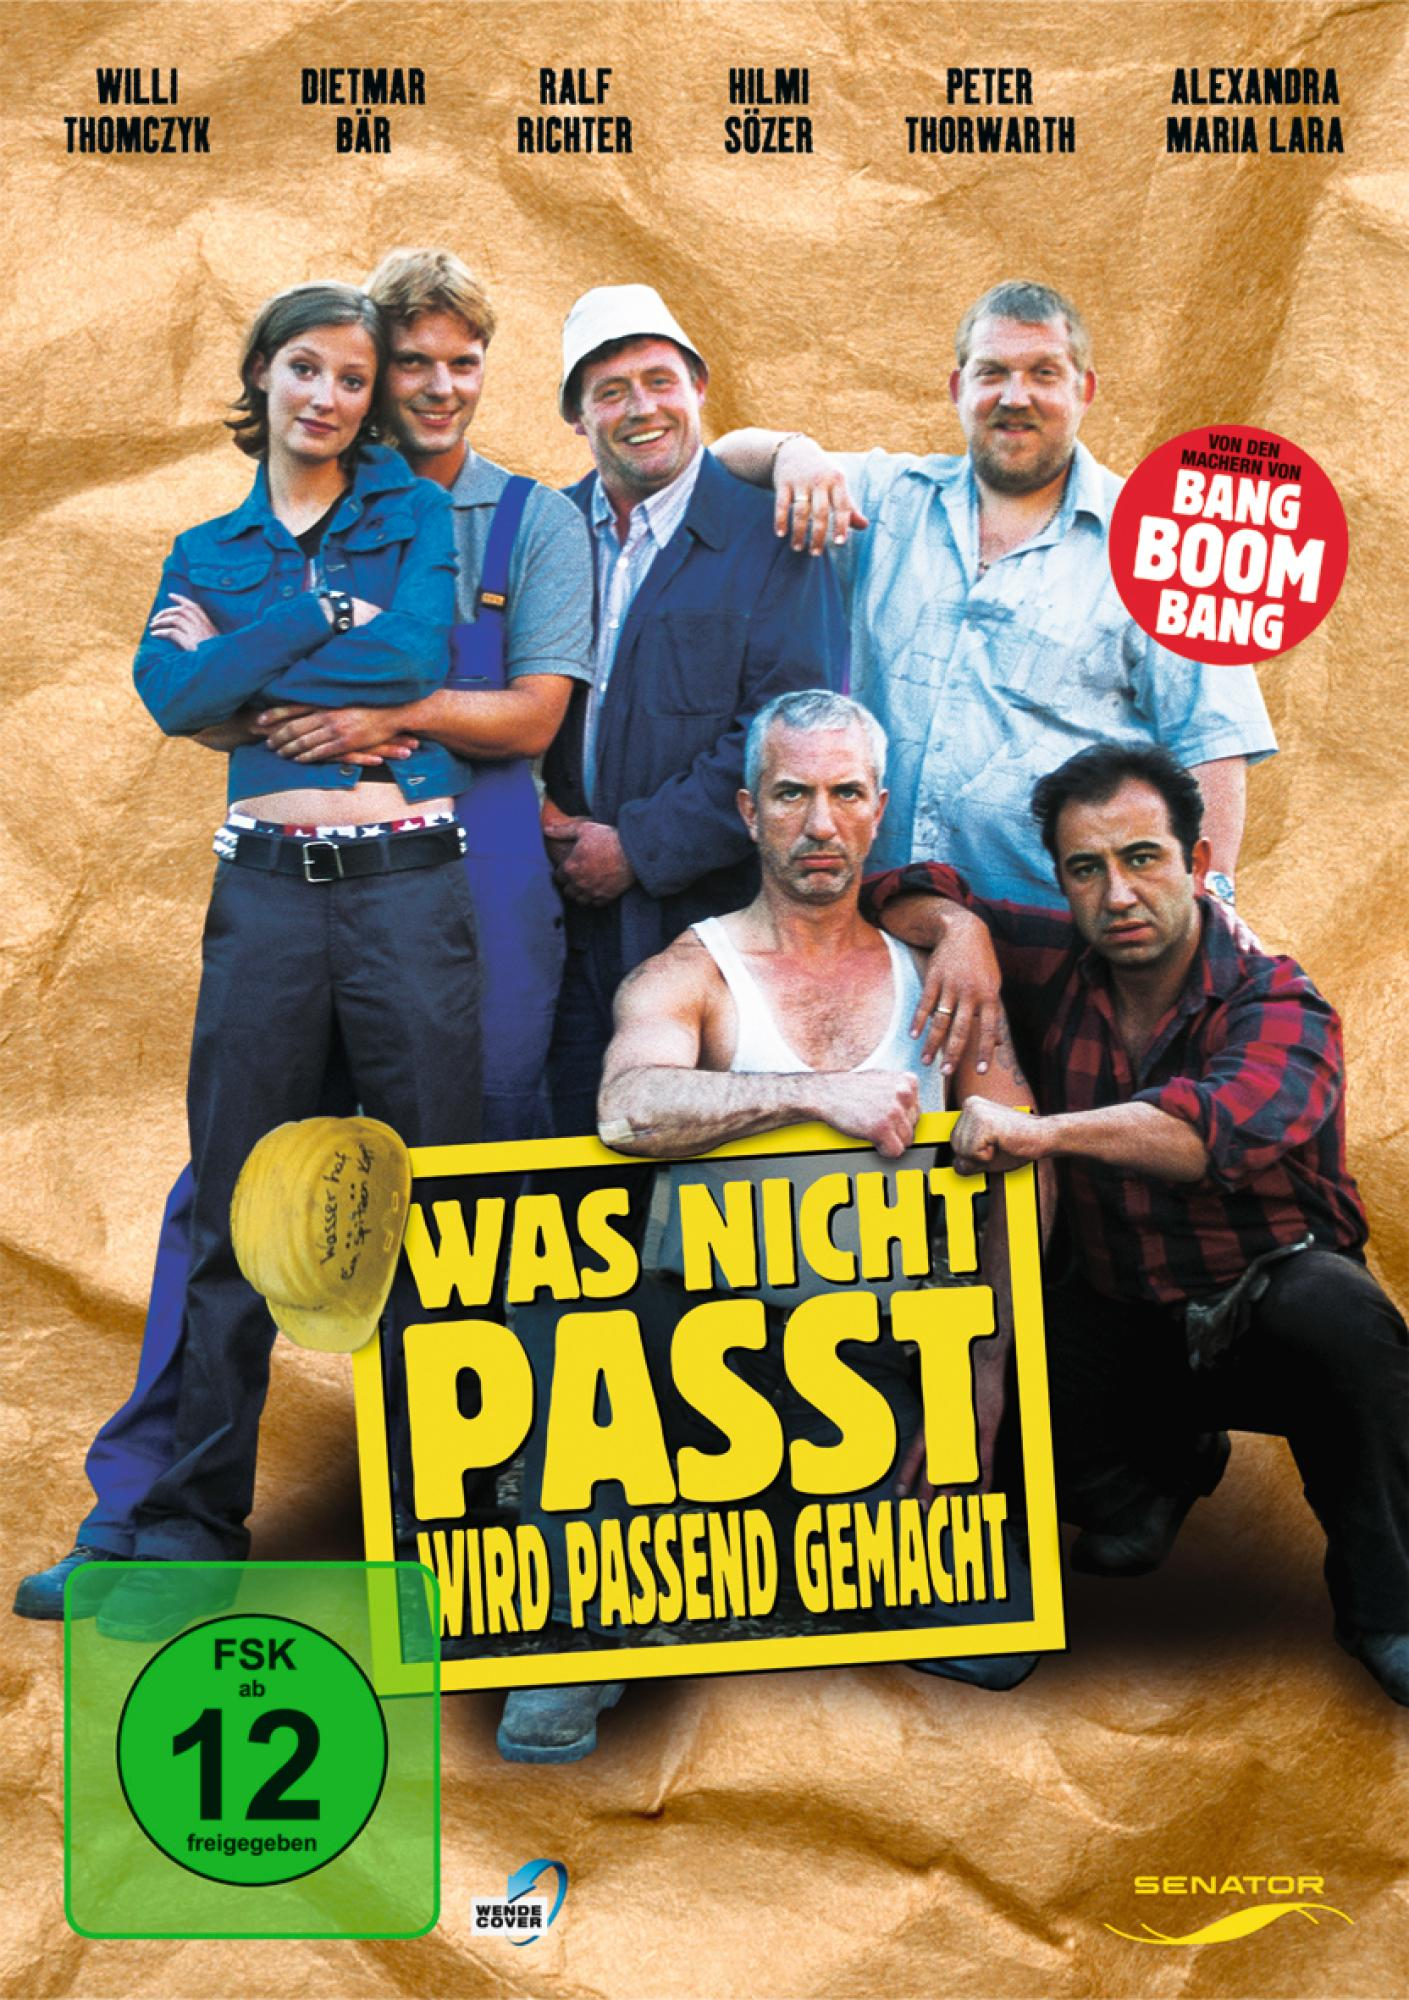 GEMACHT PASSEND NICHT PASST, WAS WIRD DVD